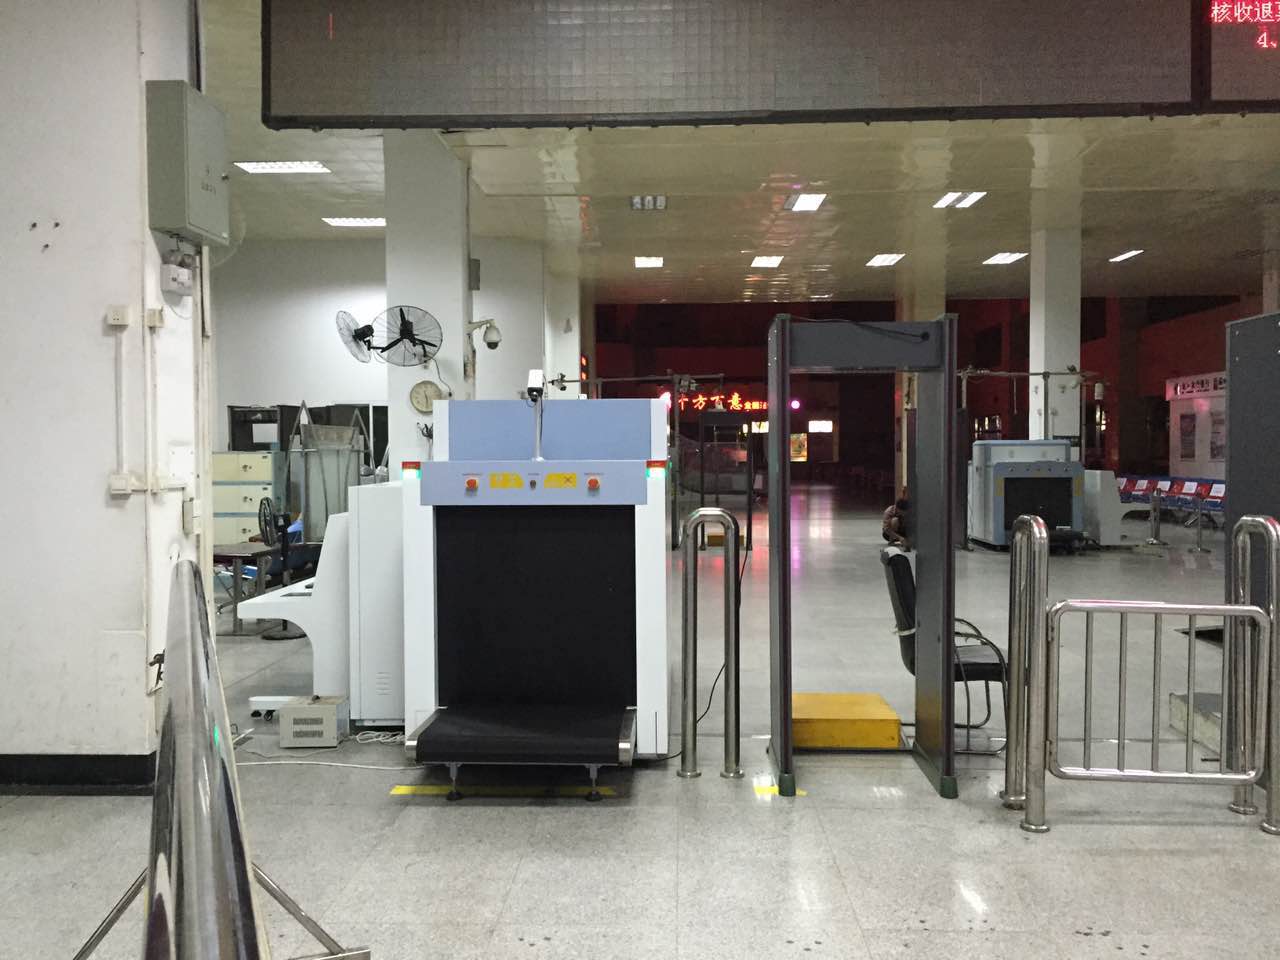 Équipement de sécurité pour le contrôle du fret des bagages en soute par rayons X